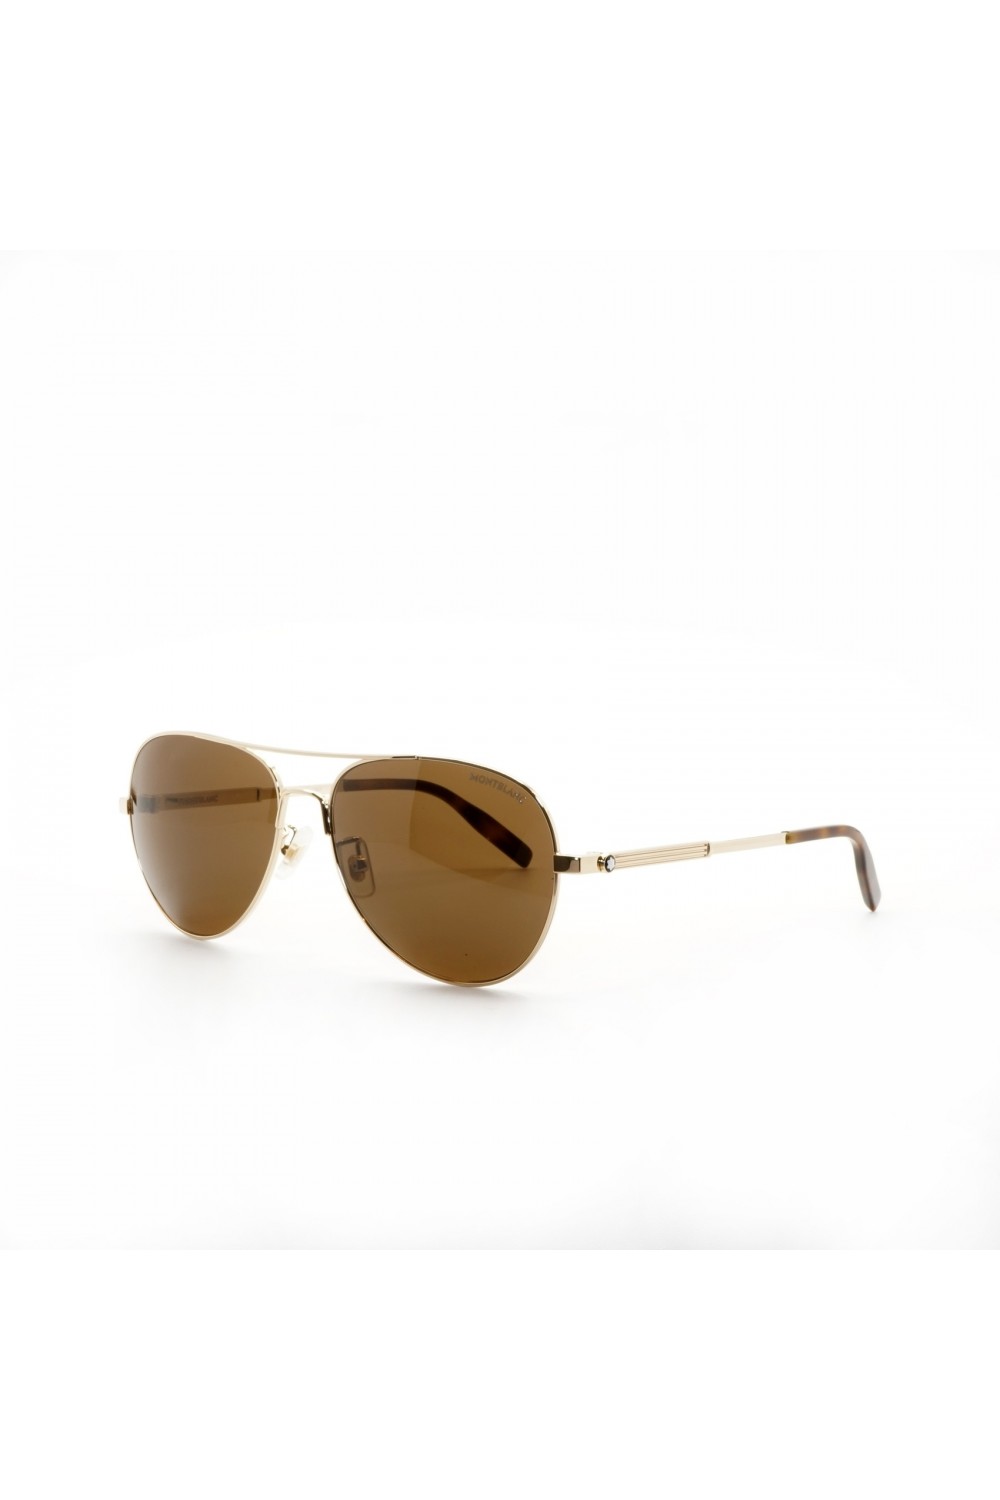 Montblanc - Occhiali da sole in metallo a goccia per uomo oro - MB0027S 008